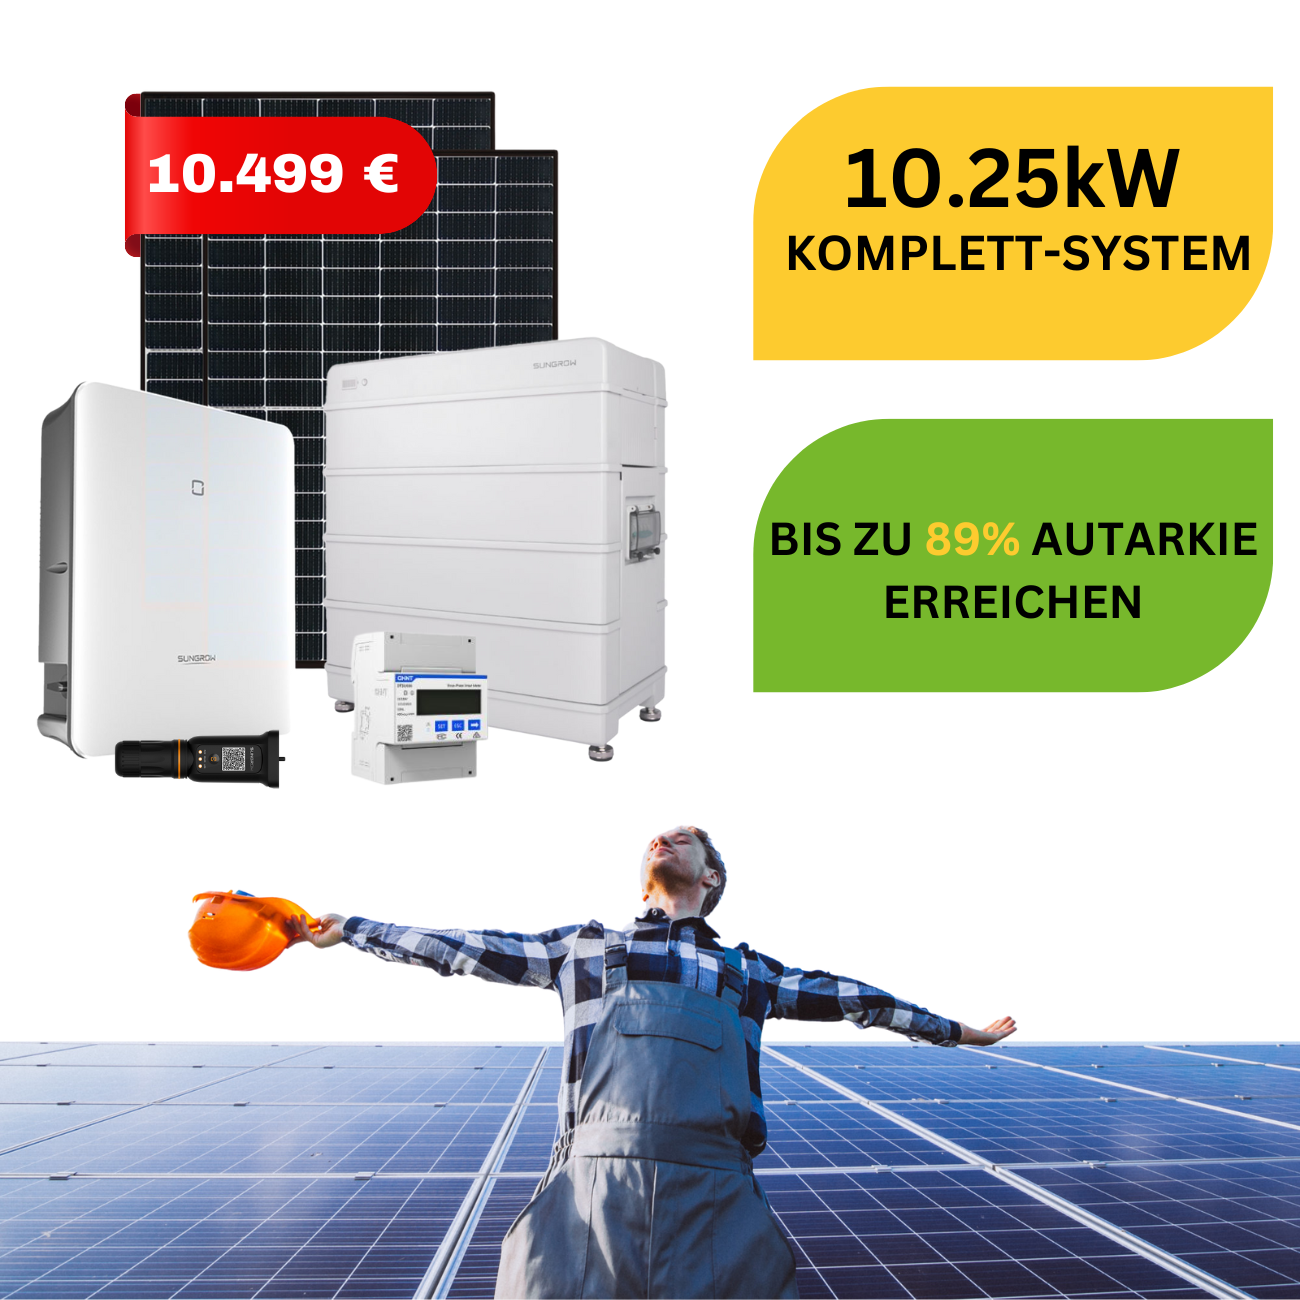 10 kW Photovoltaikanlage mit Sungrow Komponenten, 25x410W Longi Solar Solarmodule + Sungrow 10kW Wechselrichter + Speicherset Sungrow 9,6kWh für maximale Effizienz